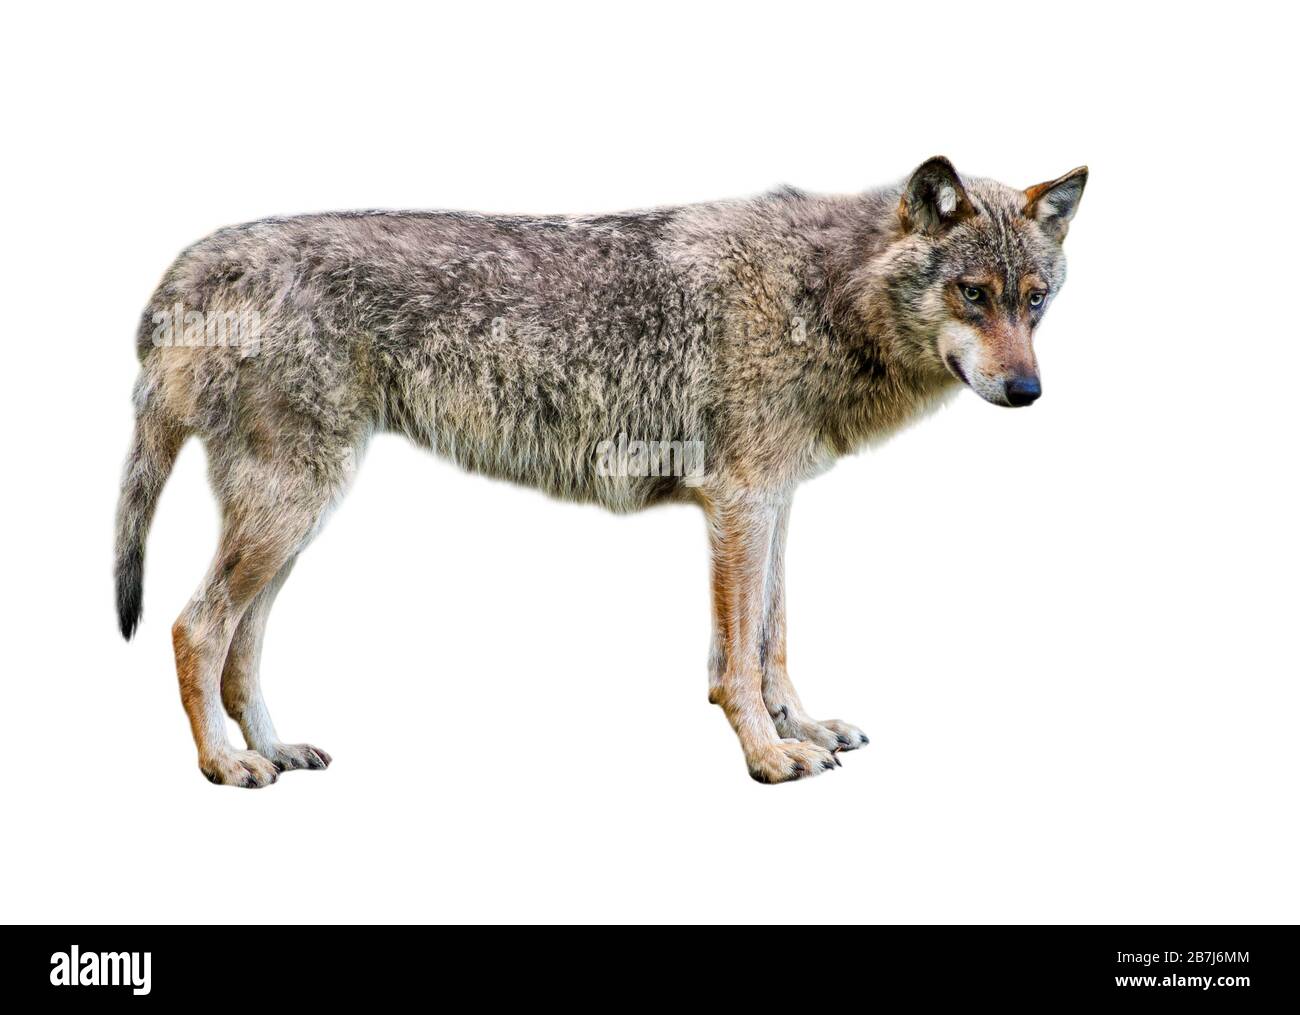 Europäischer grauer Wolf/wilder grauer Wolf (Canis lupus) vor weißem Hintergrund Stockfoto